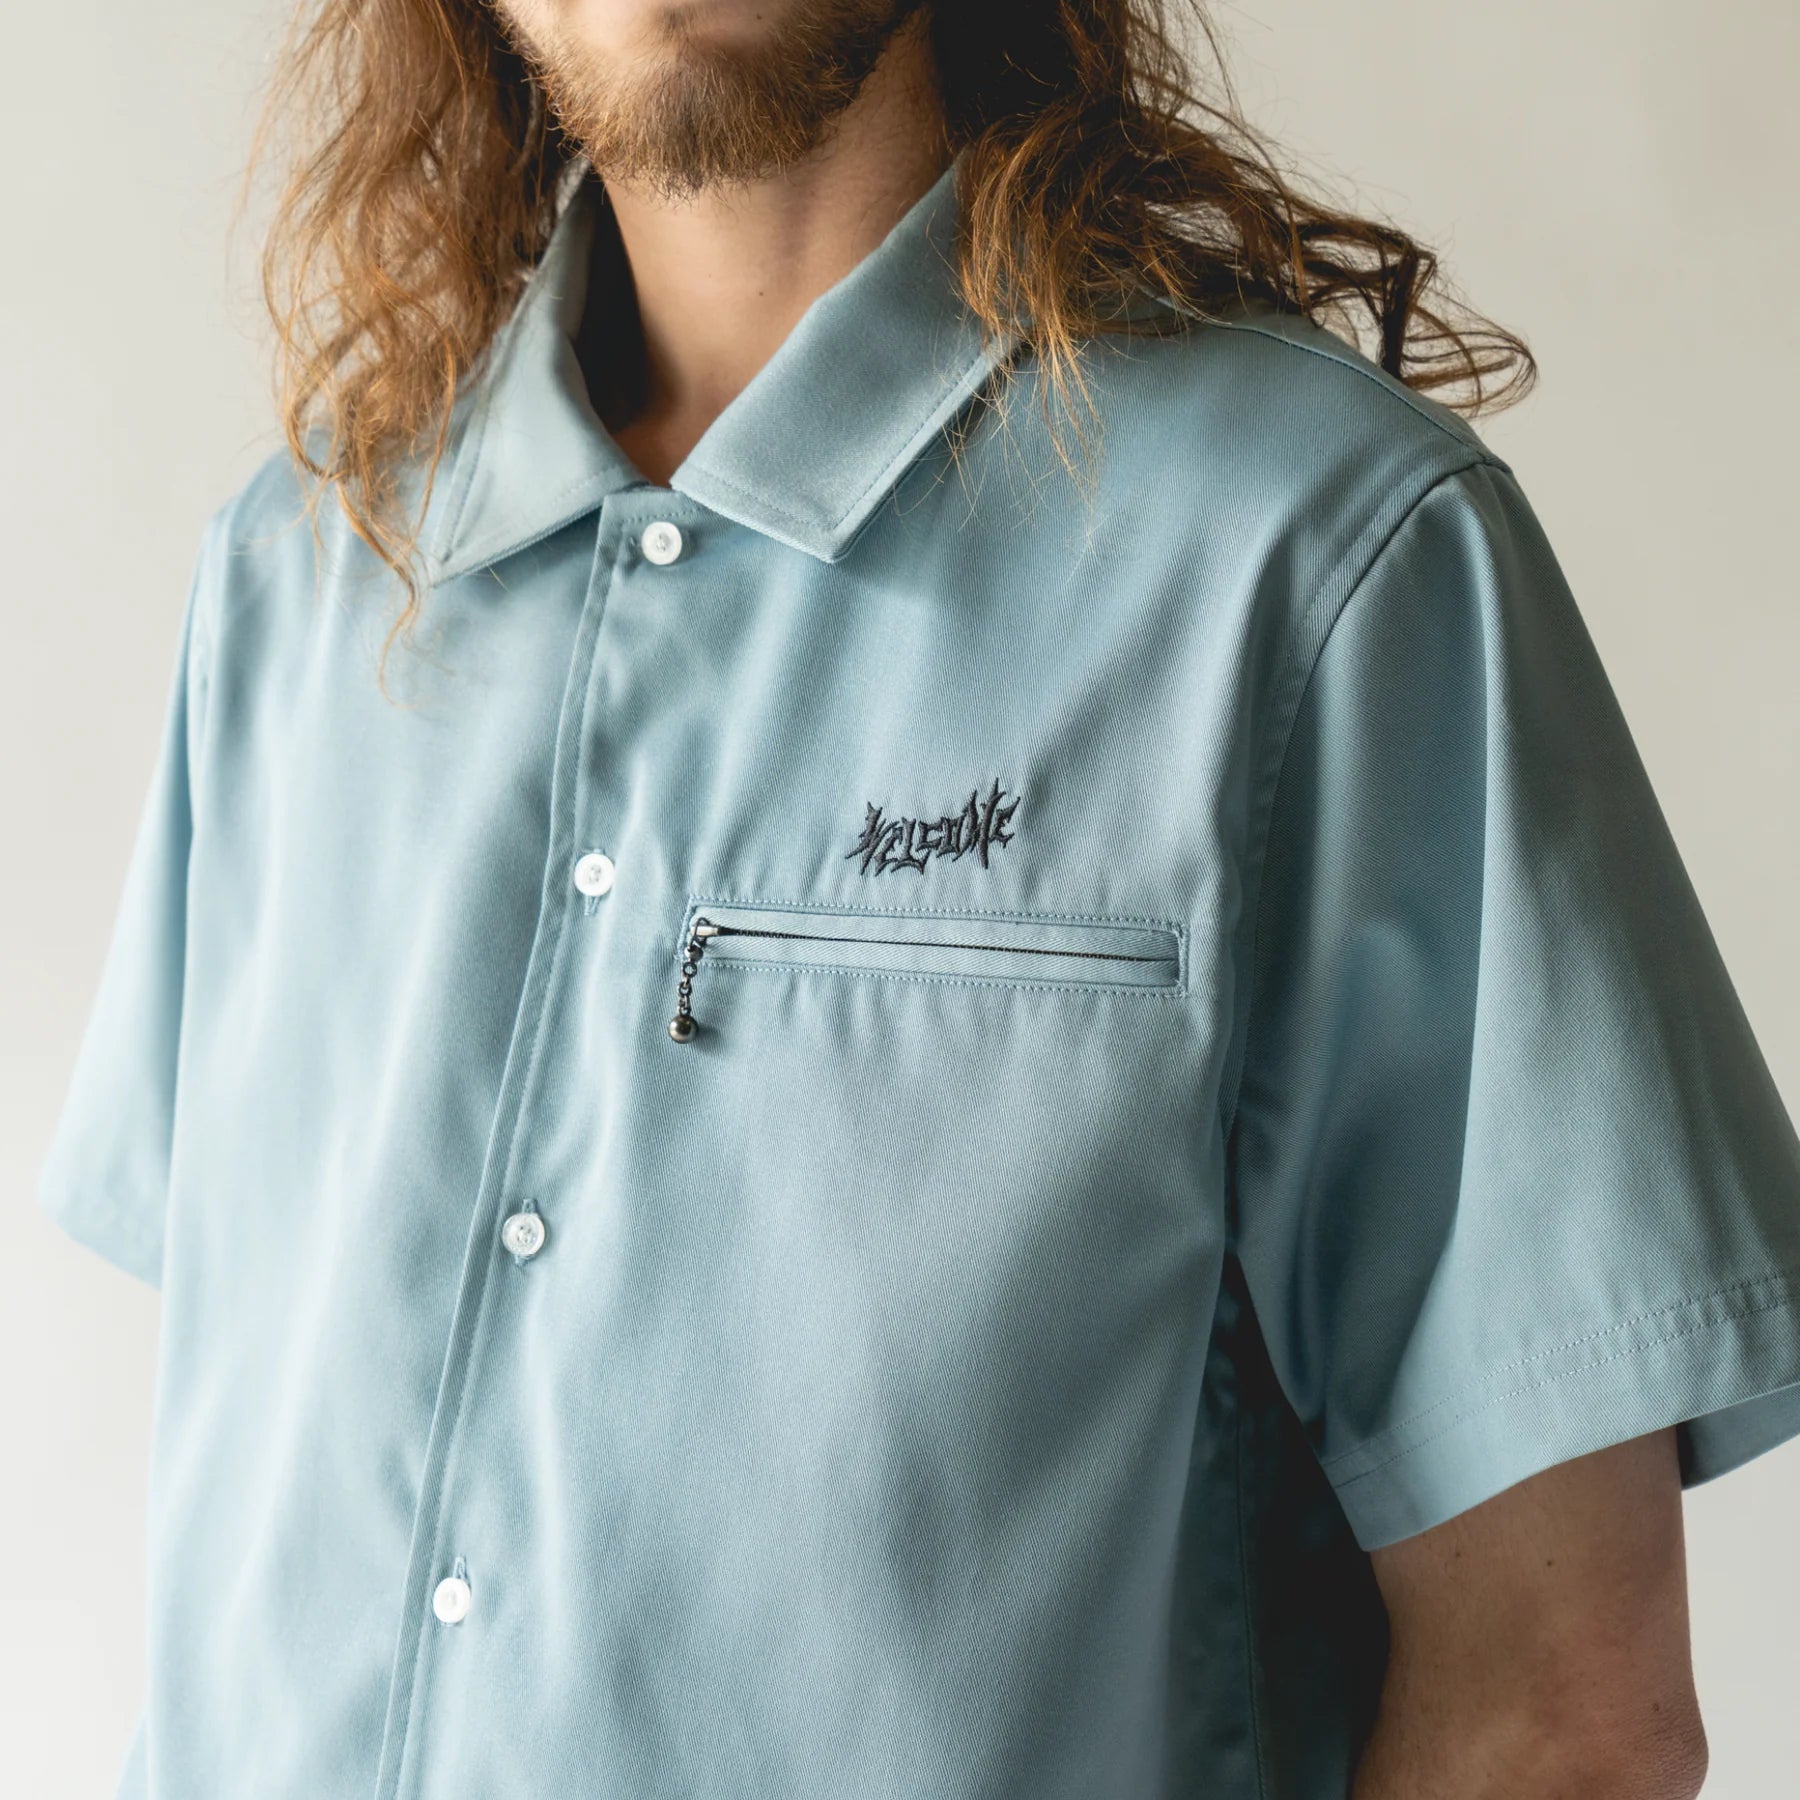 Mace Work S/S Shirt - Slate